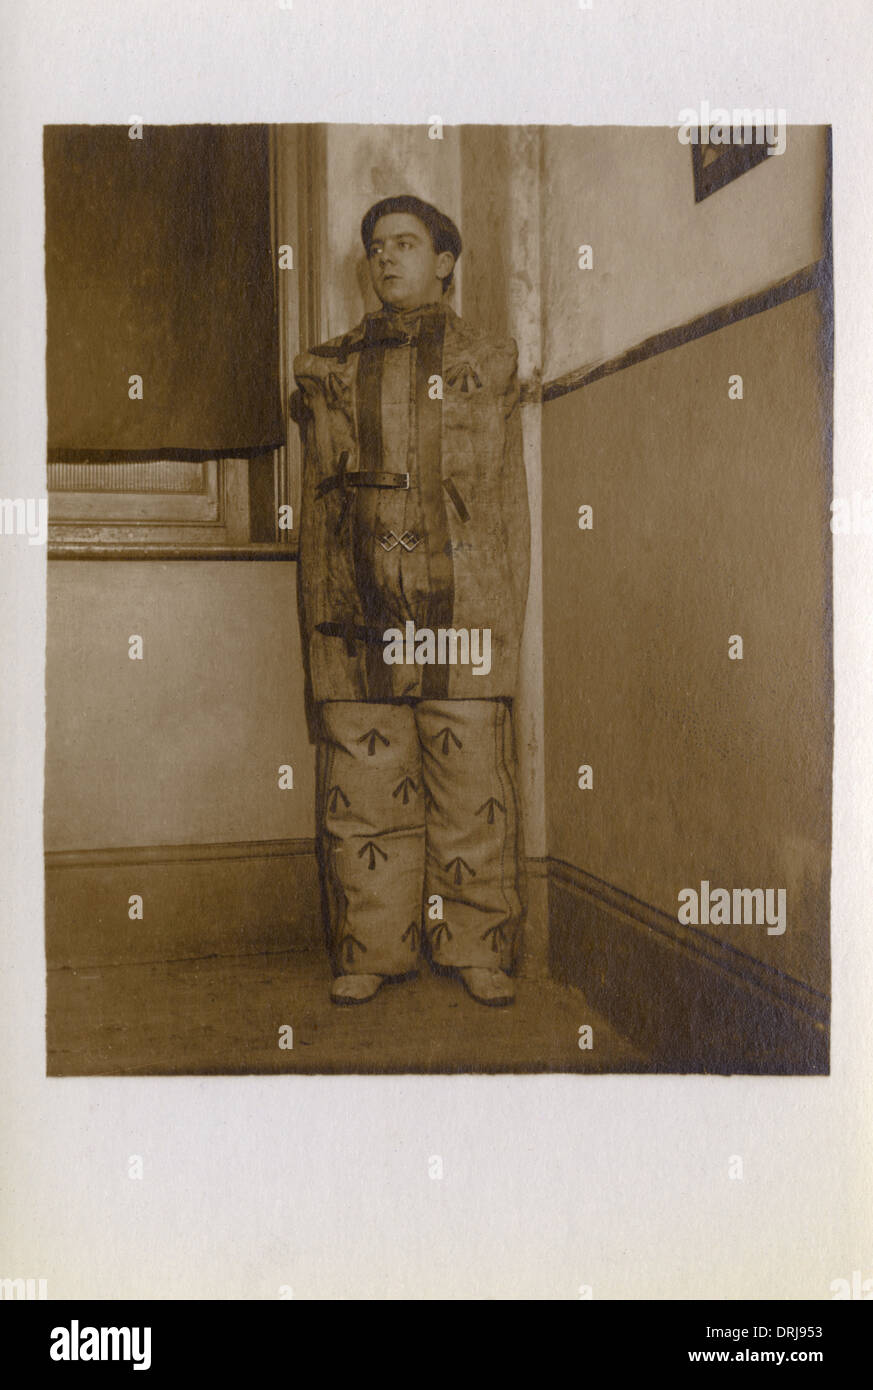 UK Prisoner in a Straitjacket Stock Photo